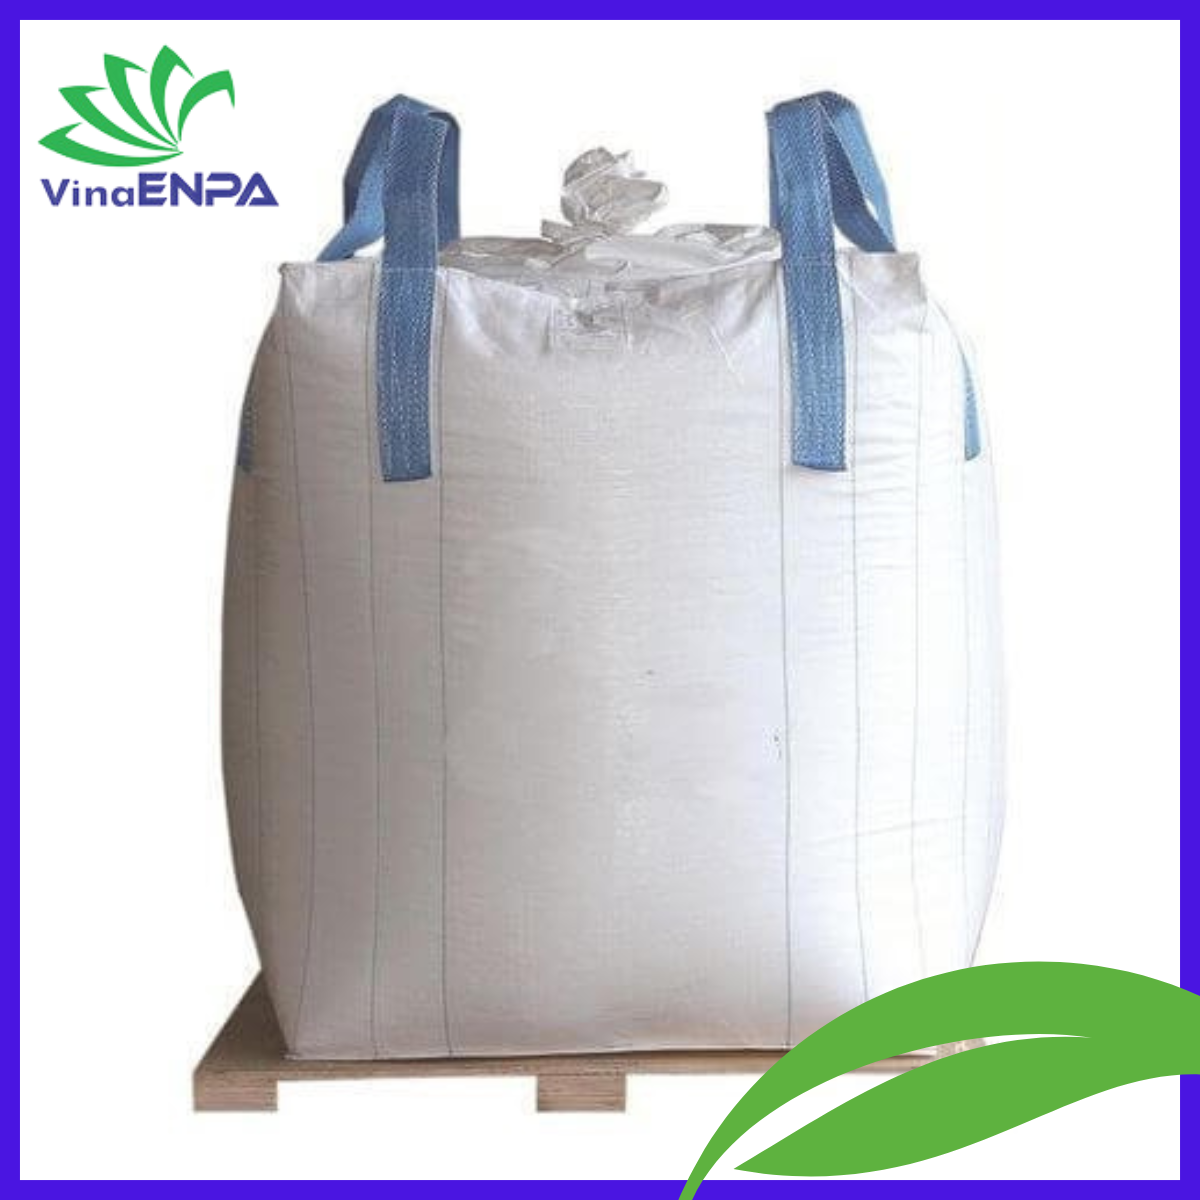 (Hình ảnh mẫu Bao jumbo 500kg hàng VinaENPA)